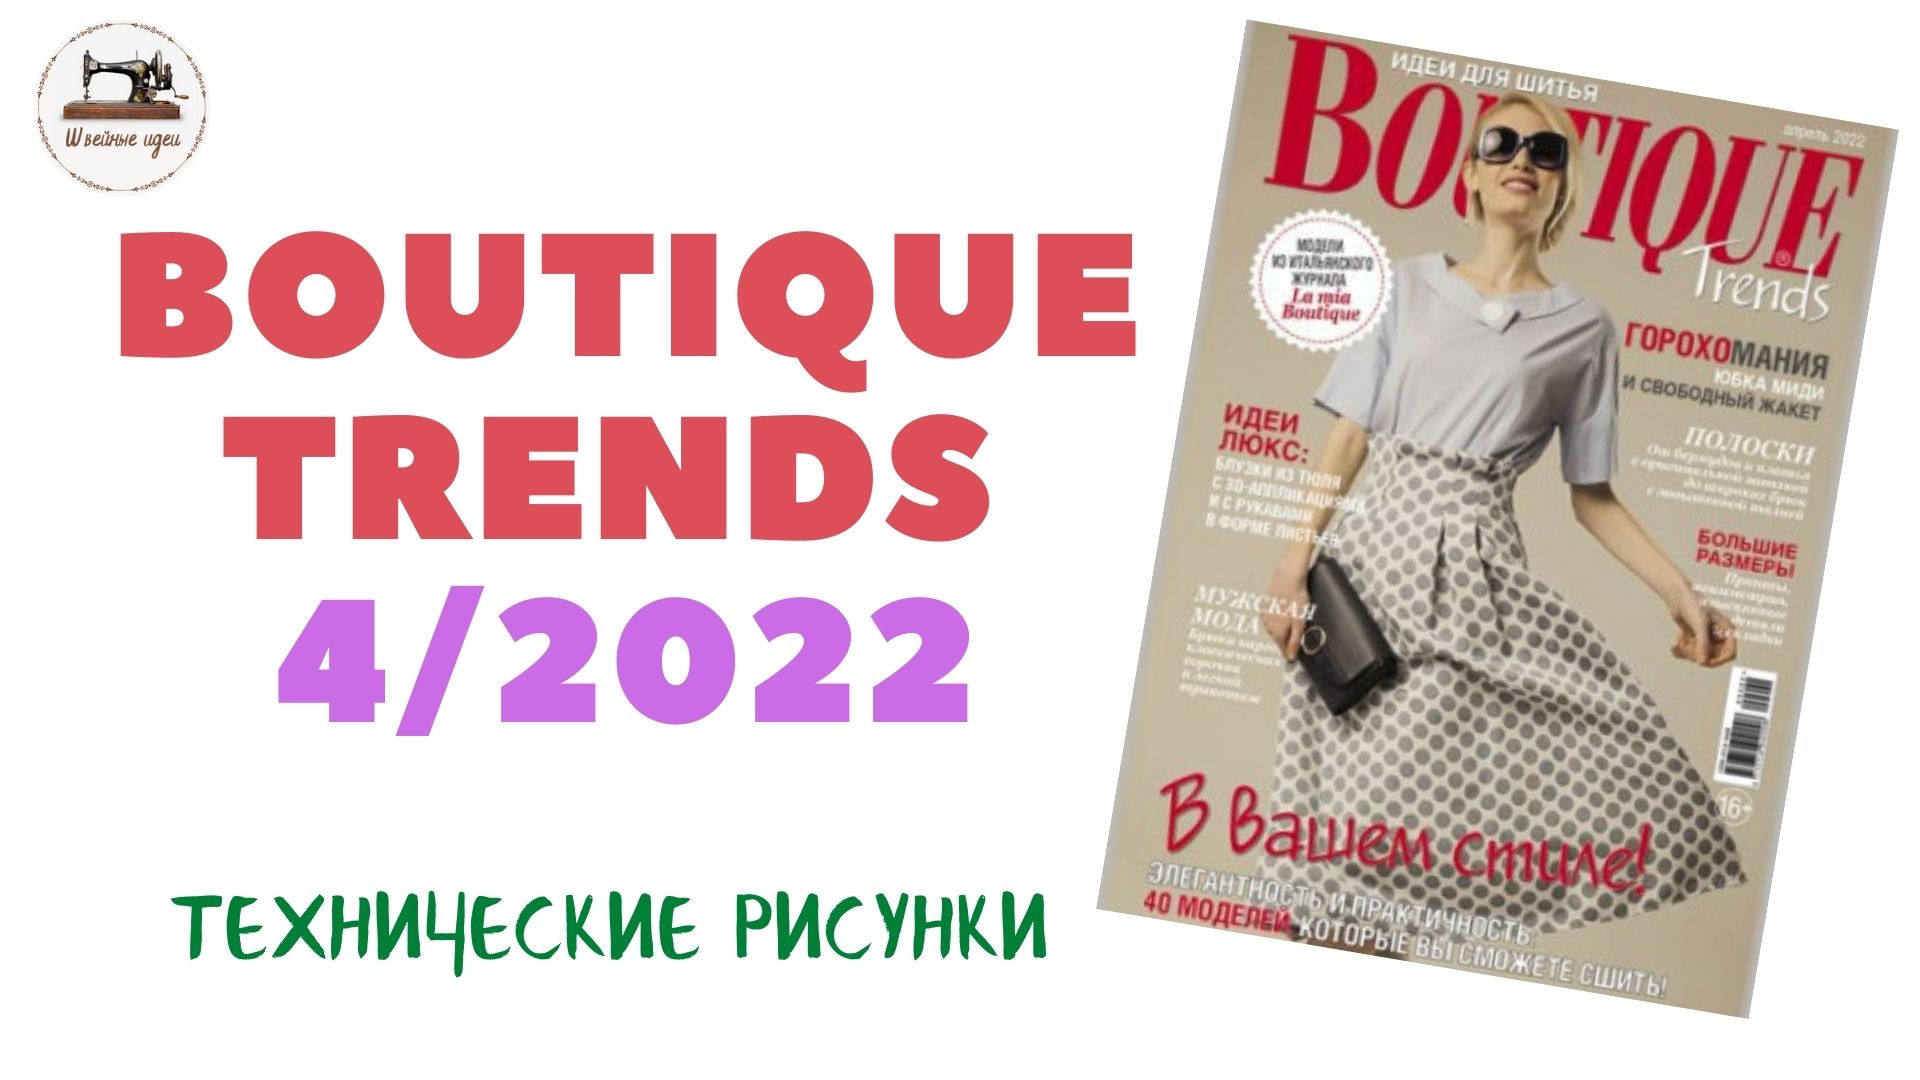 Обзор журнала Boutique Trends 4/2022/ Апрель 2022. Итальянская мода. Технические рисунки крупно